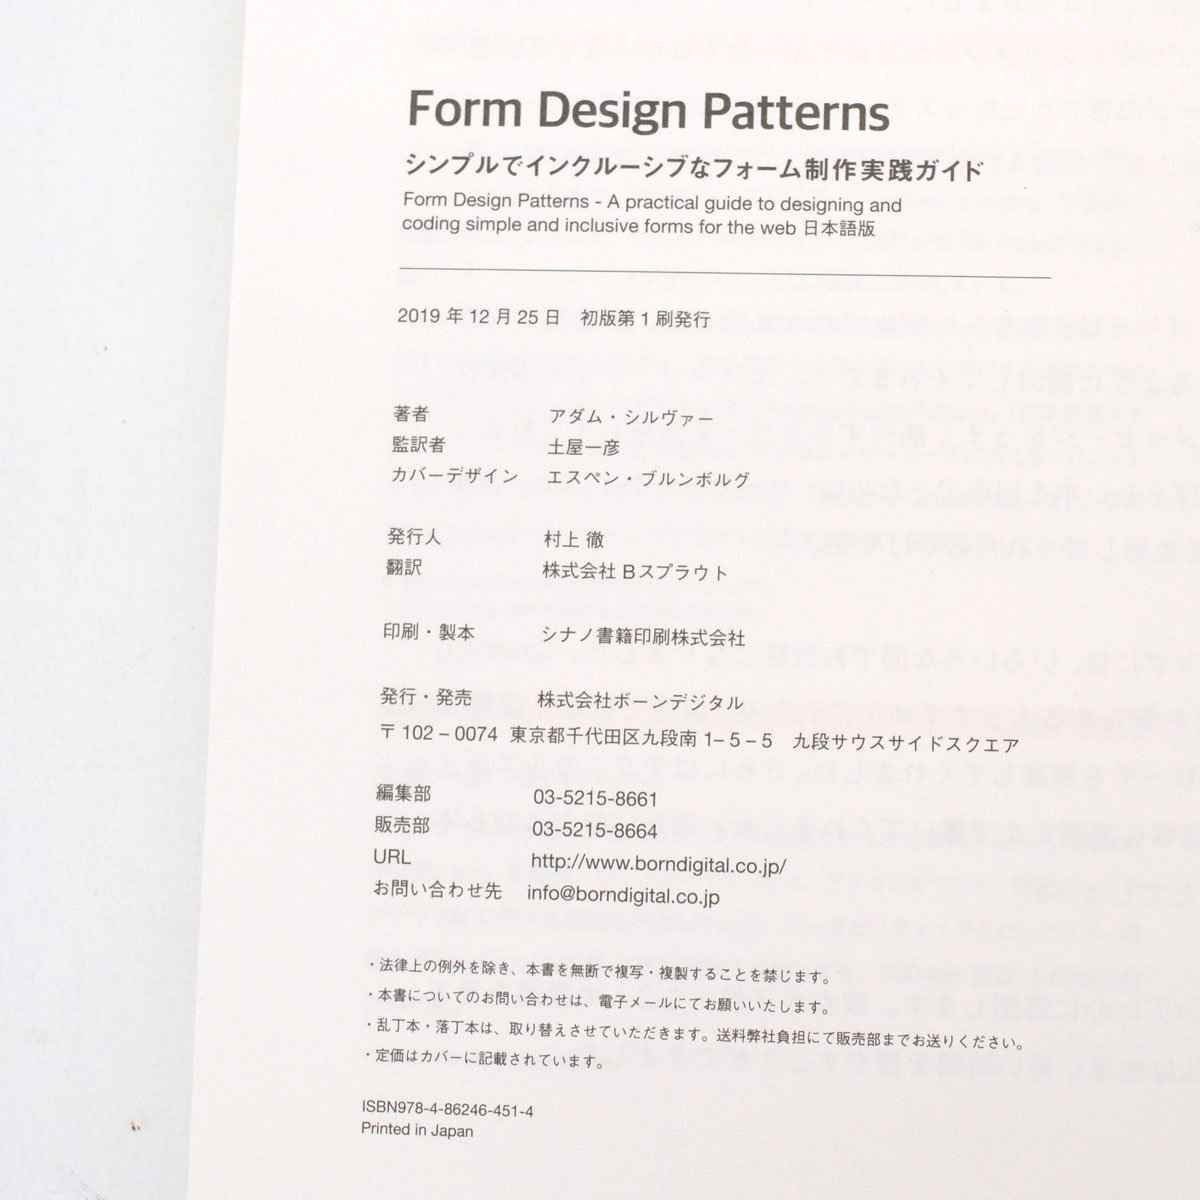 Form Design Patterns シンプルでインクルーシブなフォーム制作実践ガイド アダム・シルヴァー(著)、土屋一彦 (監修) [S206798]_画像6